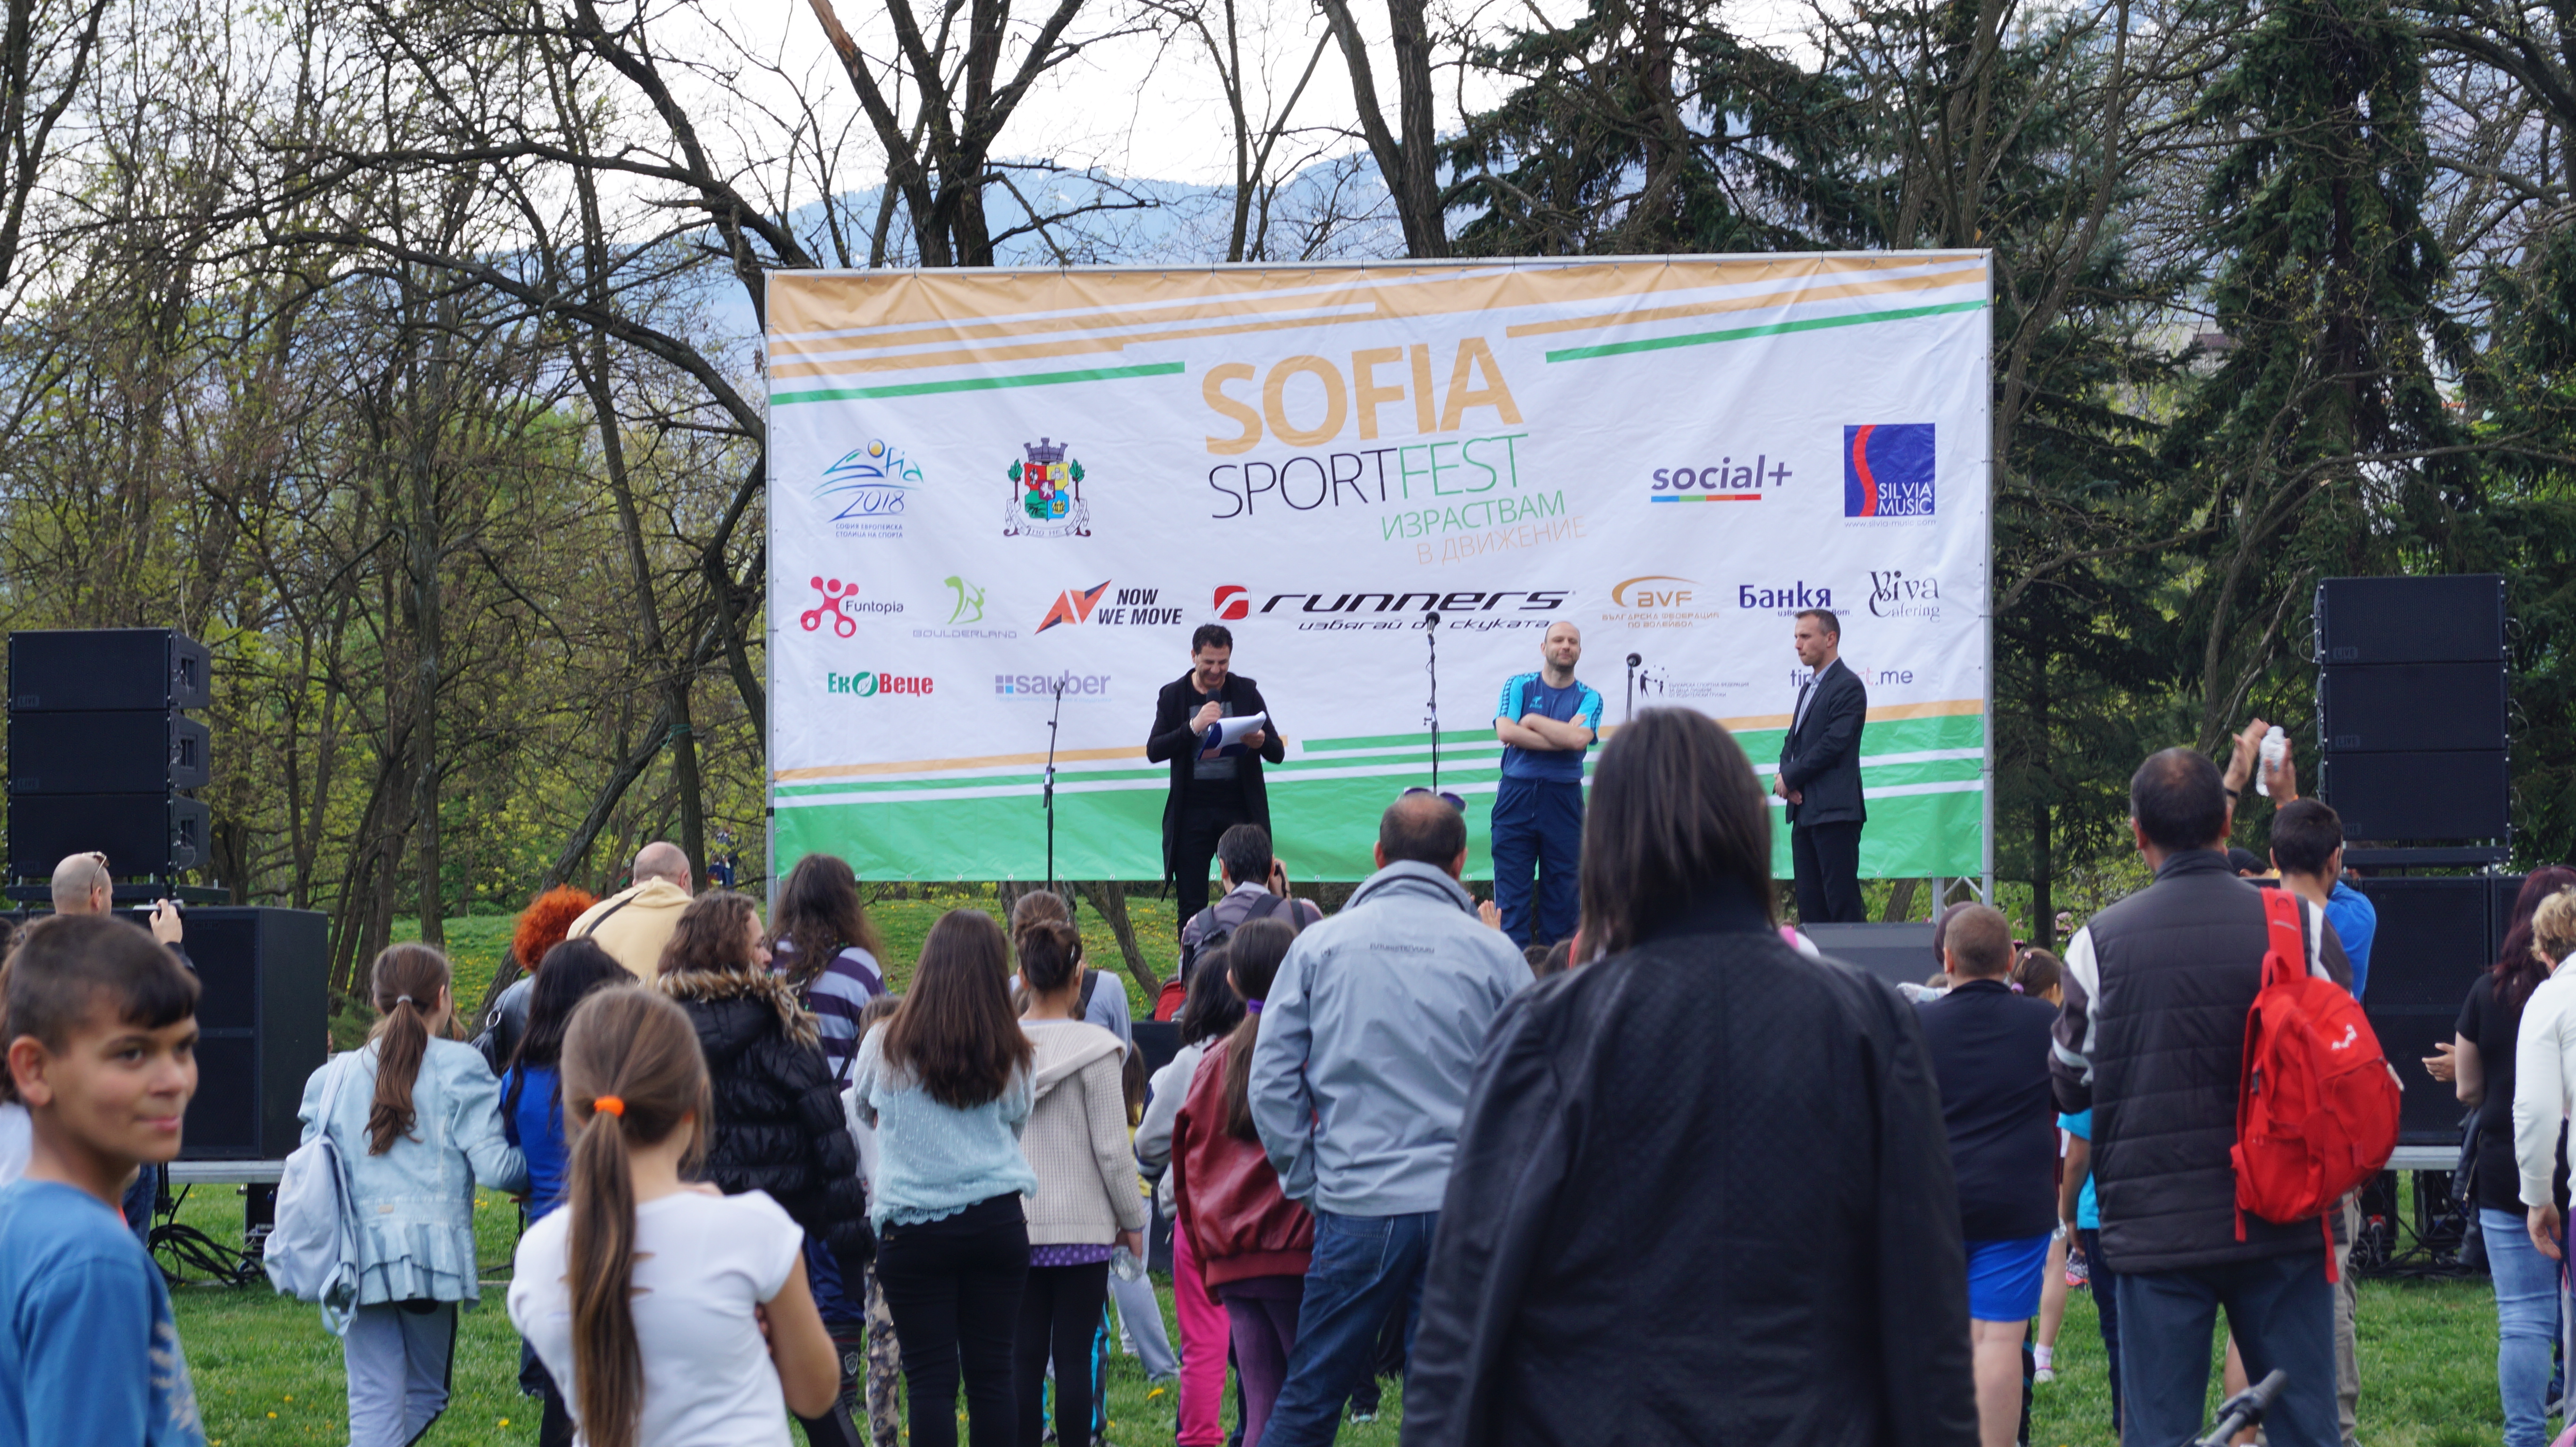 Sofia sport fest се проведе с помощта на BG Бъди активен под шапката на NowWeMOVE България